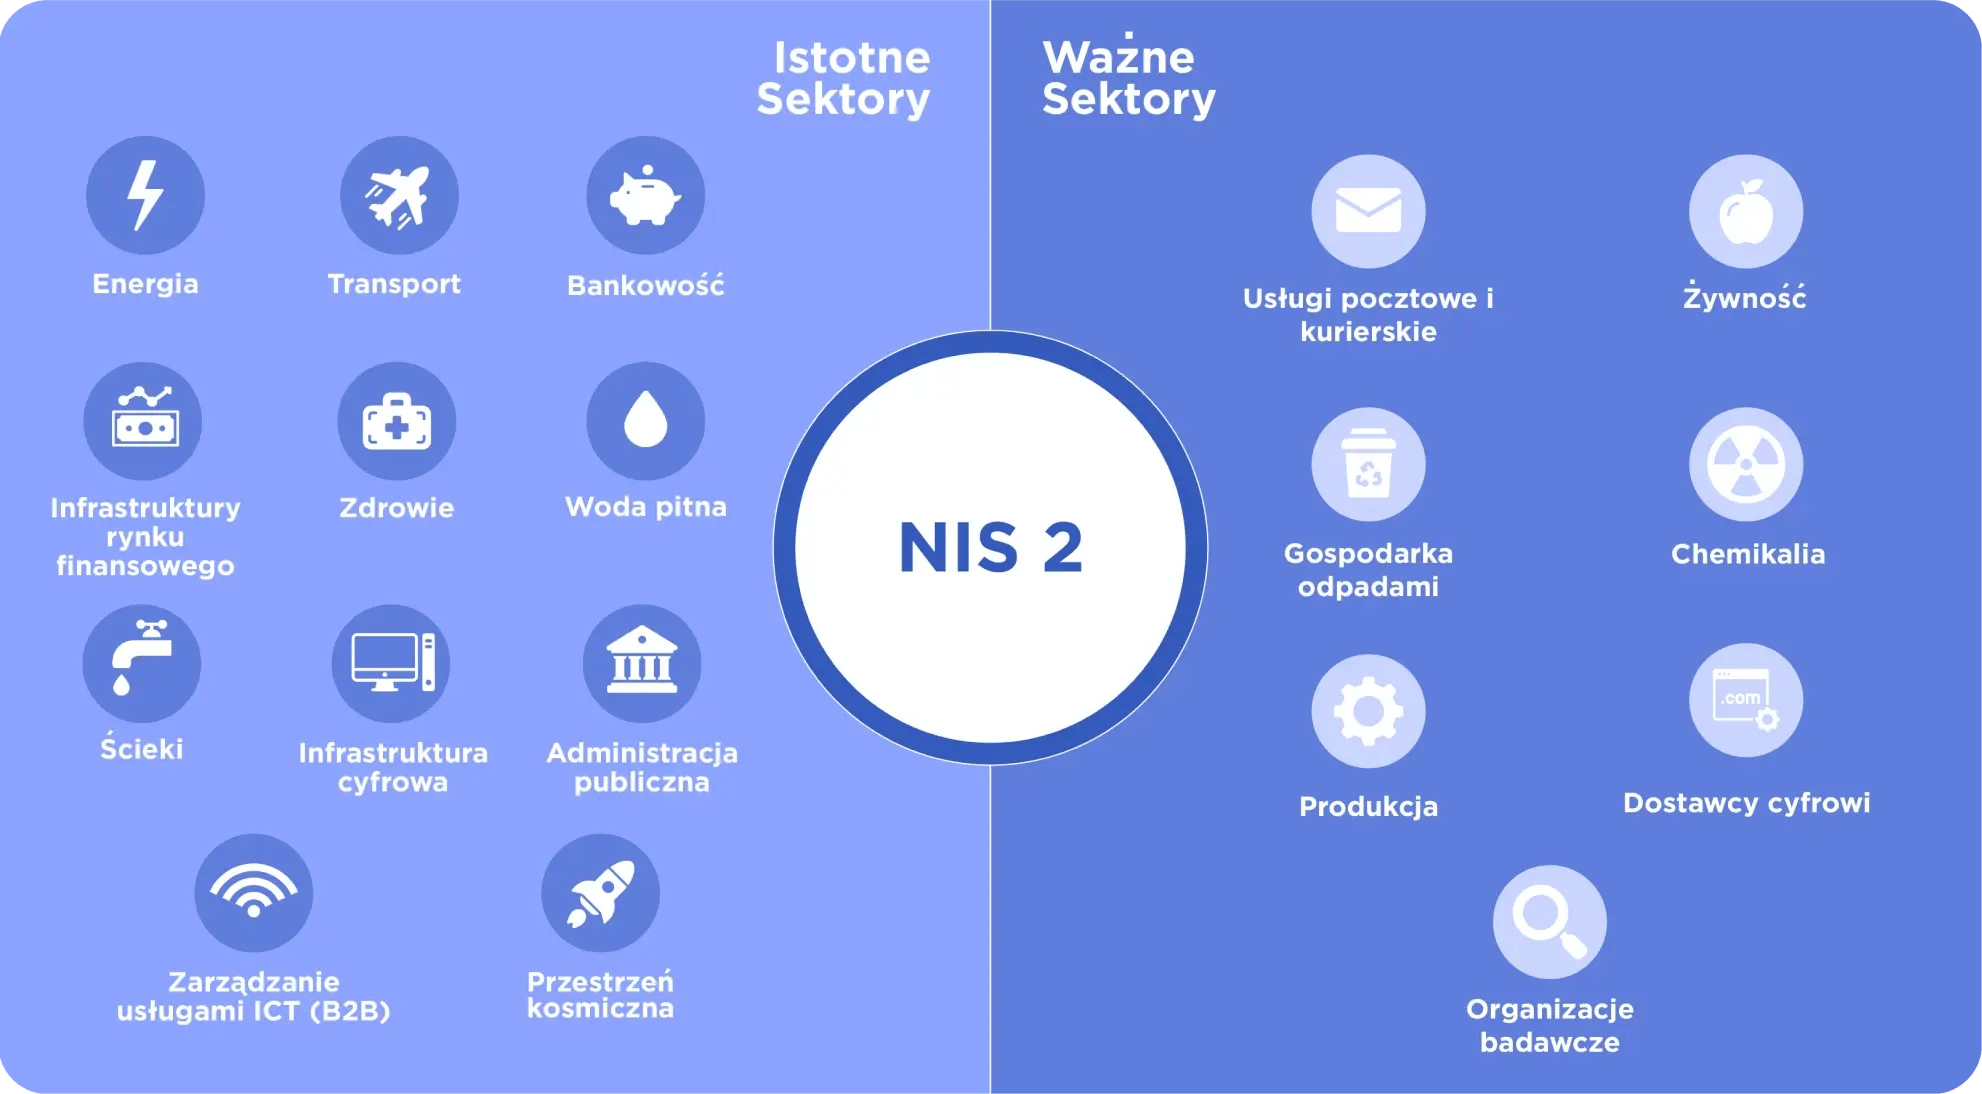 NIS 2 Sectors Infographic PL